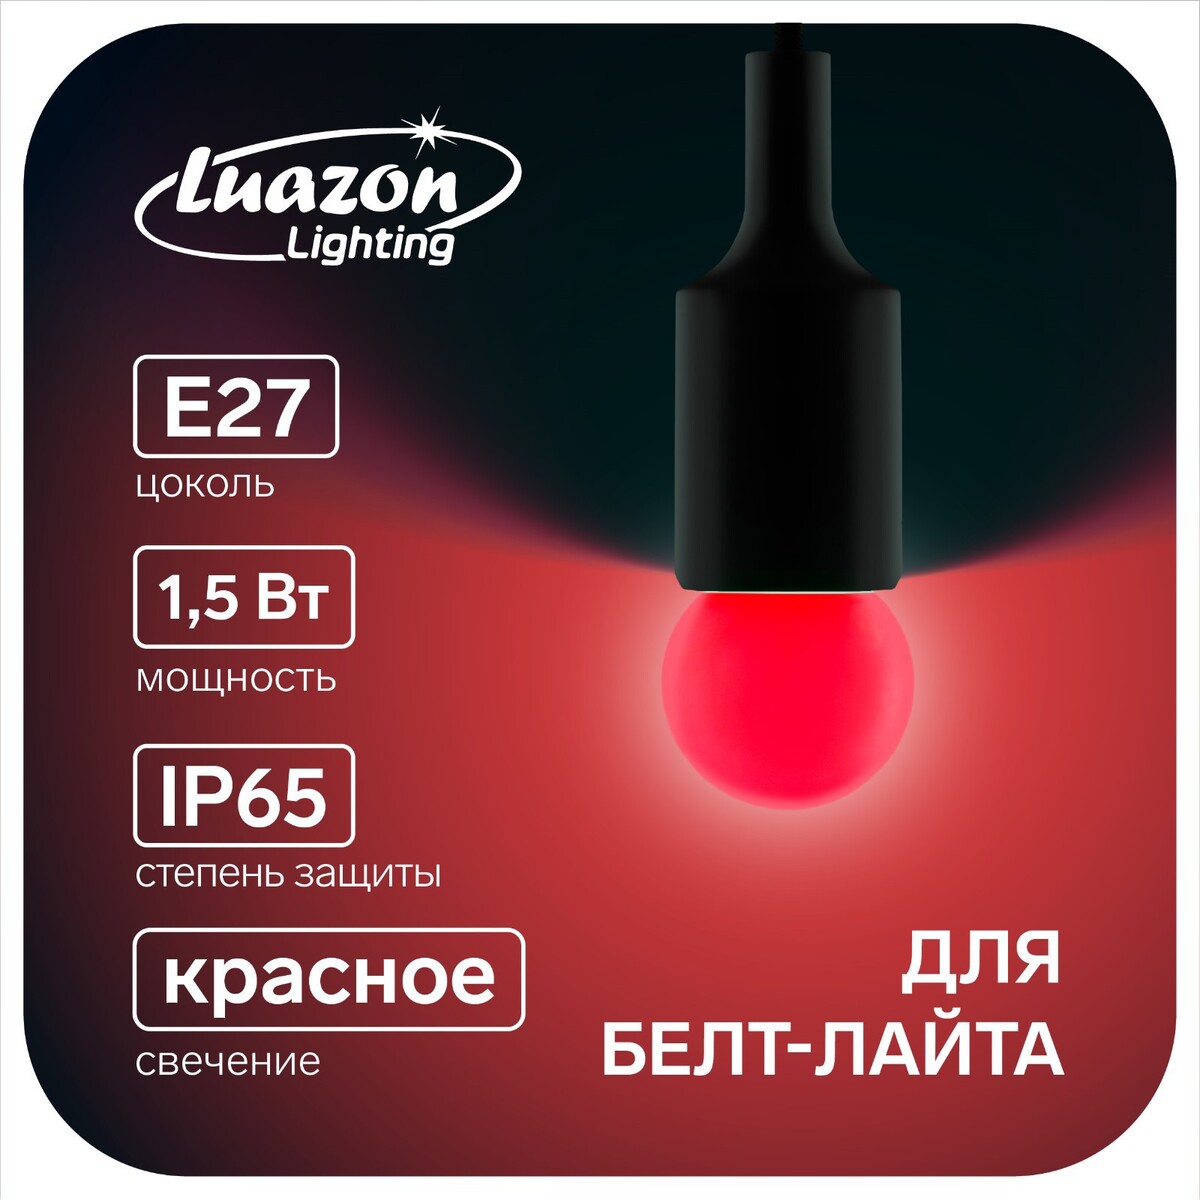 Лампа светодиодная luazon lighting, g45, е27, 1.5 вт, для белт-лайта, красная, наб 20 шт кольцевая светодиодная лампа fancier led 3dv c гибким держателем